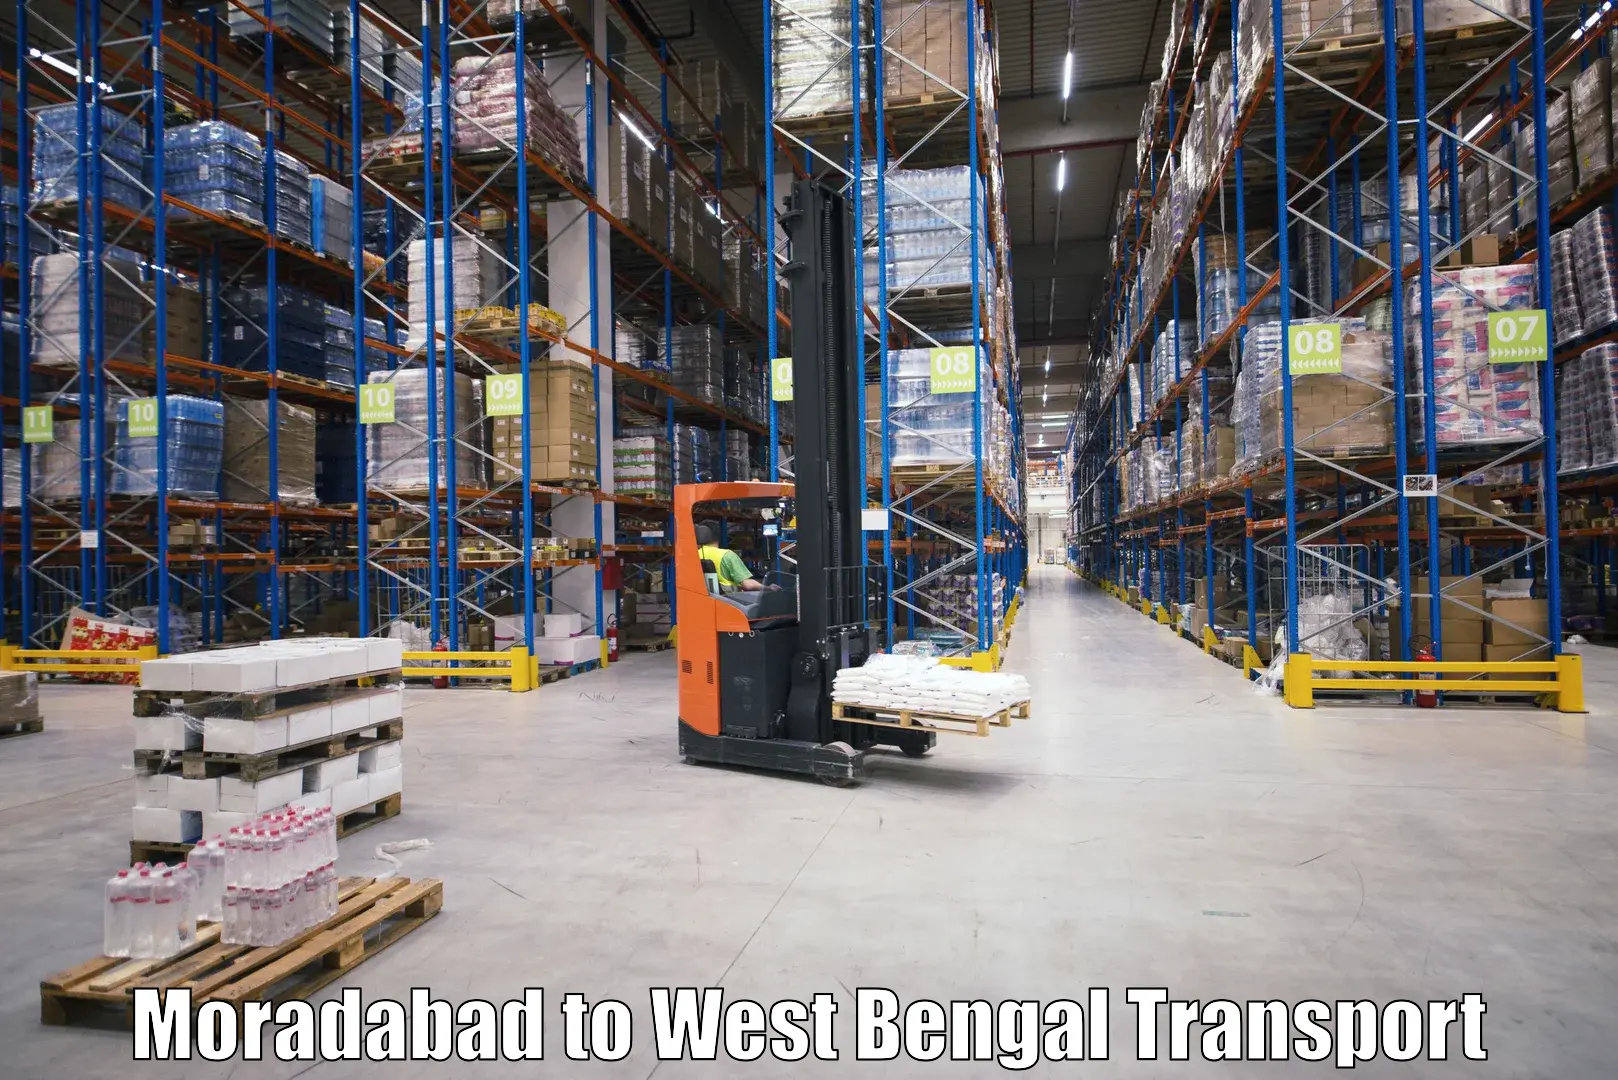 Cargo train transport services Moradabad to South 24 Parganas